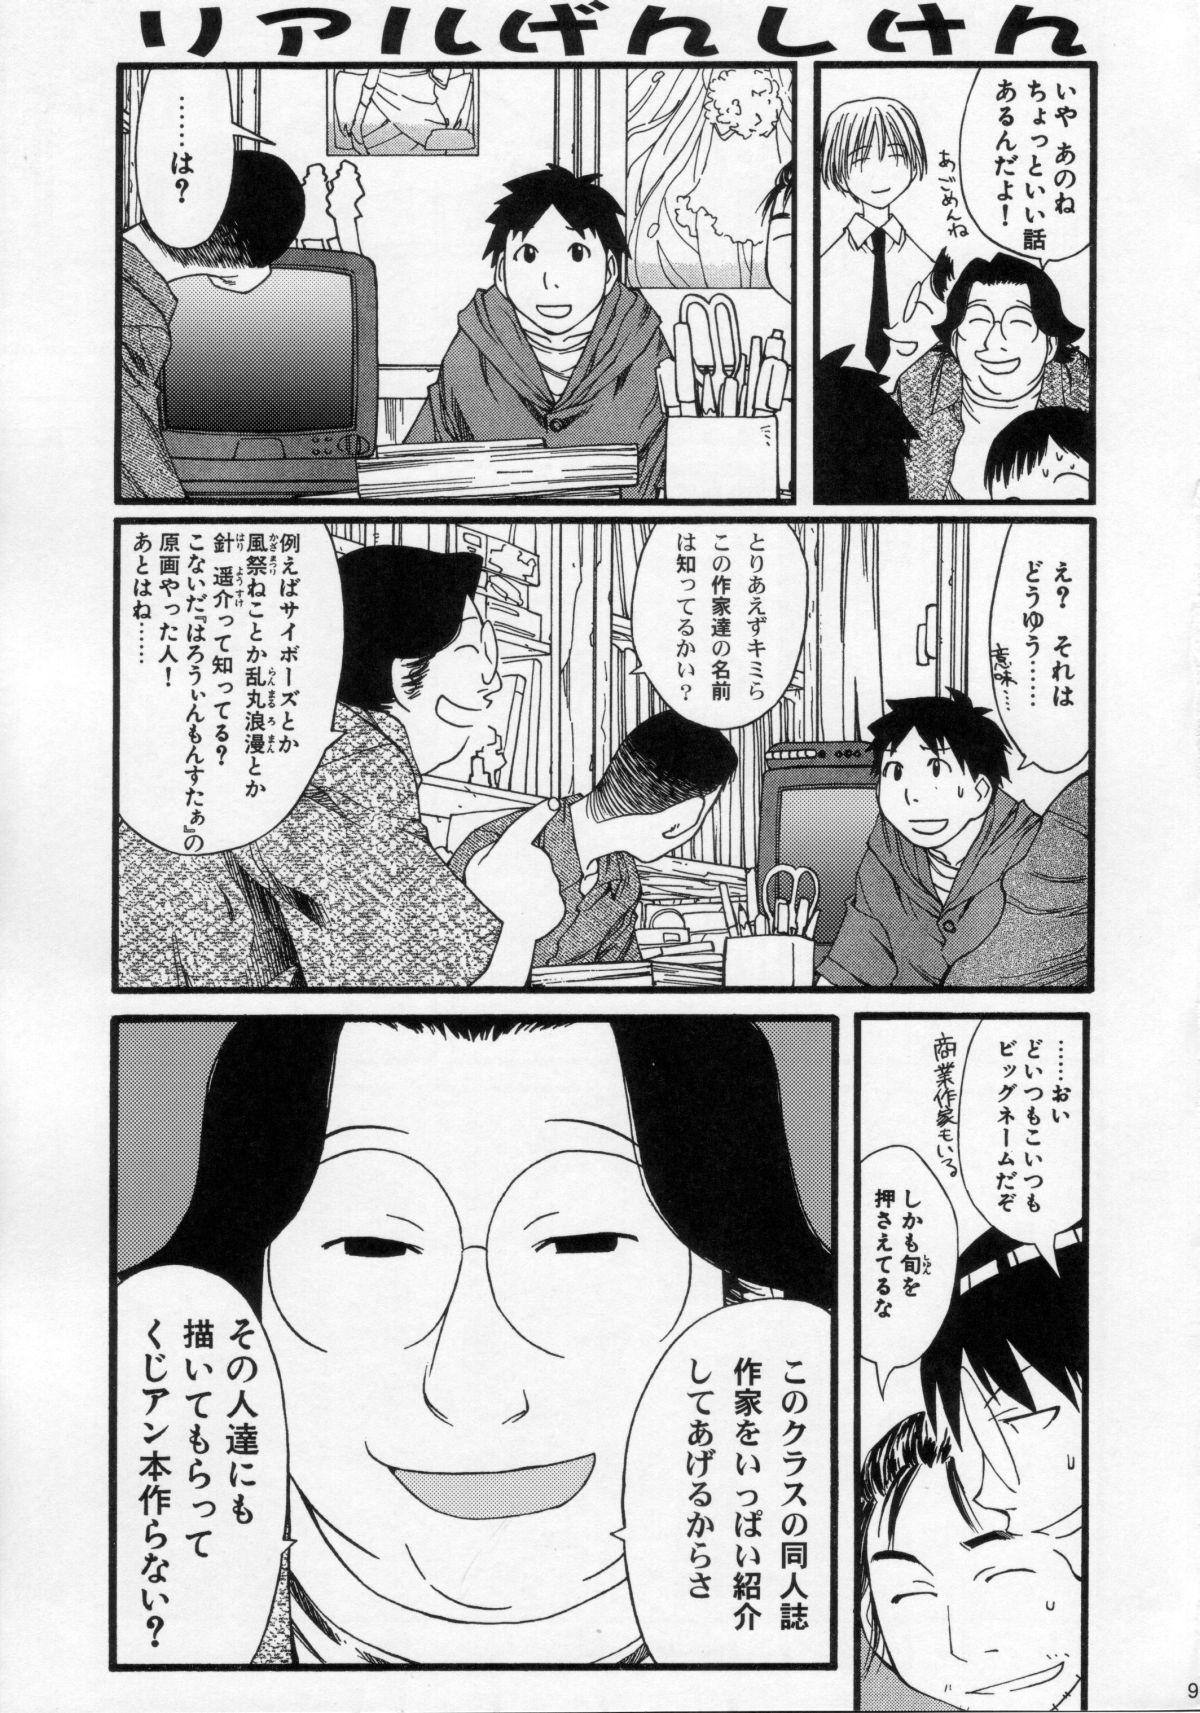 Umeta Manga Shuu 11 -nin iru! 95